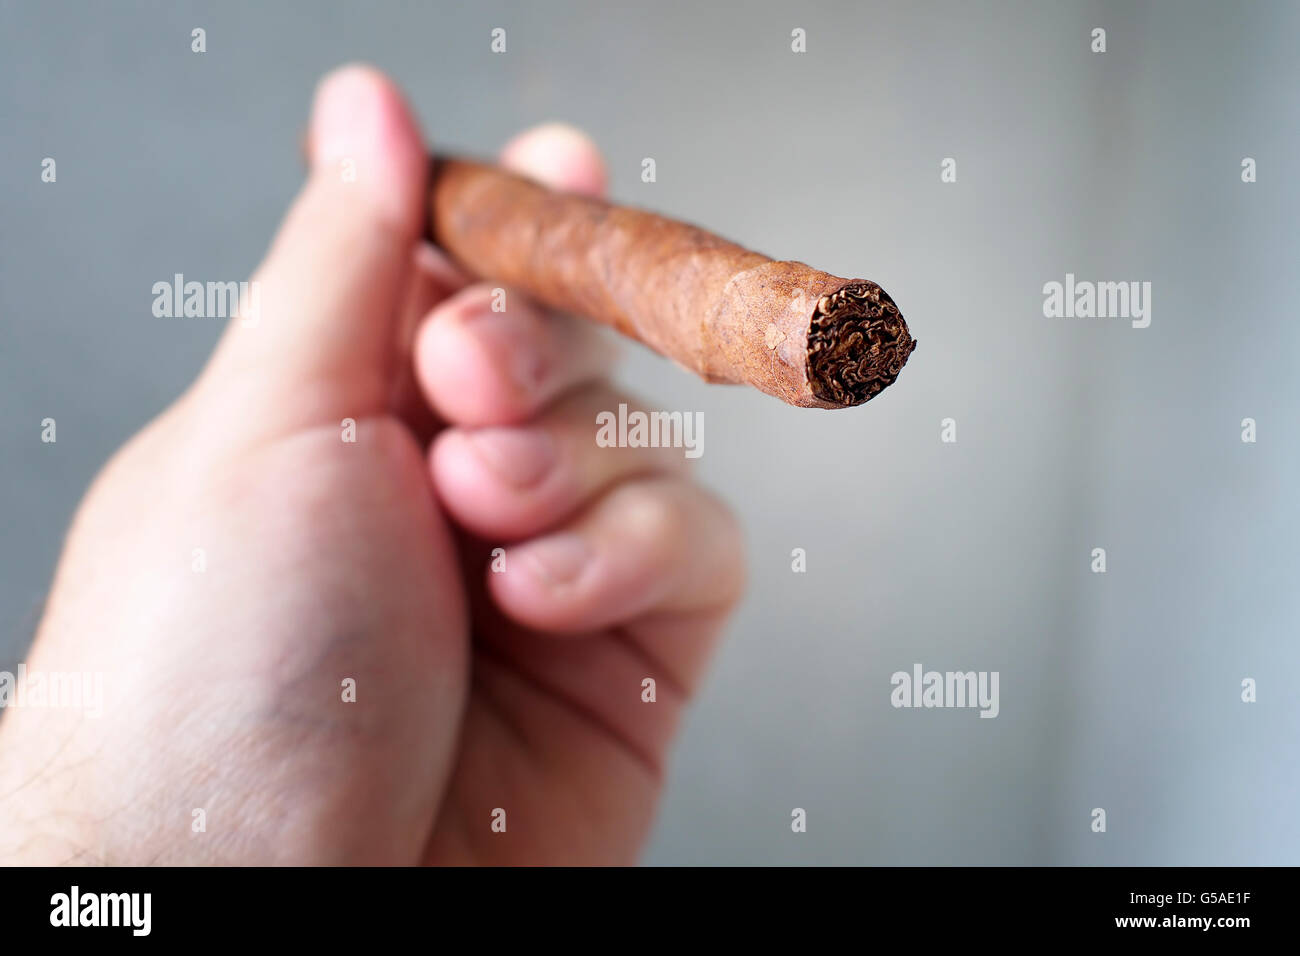 Italian full length toscano cigar. Stock Photo